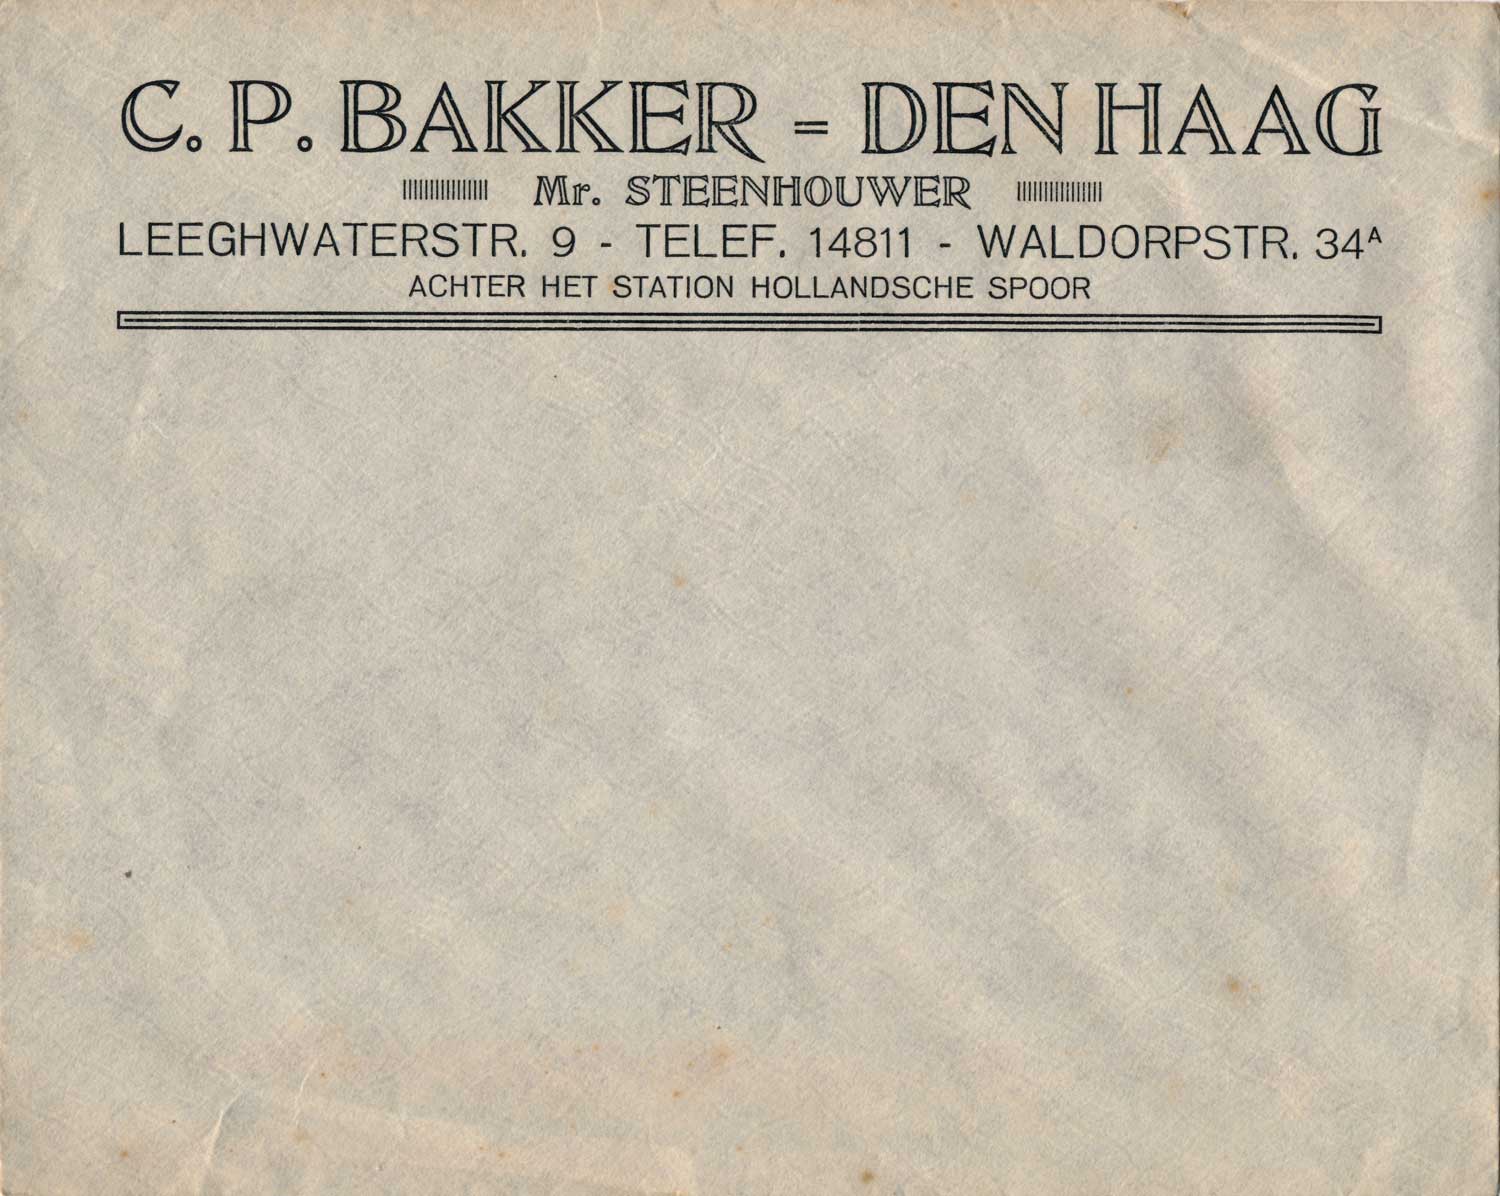 Envelop steenhouwerij Bakker, Waldorpstraat, jaren 20